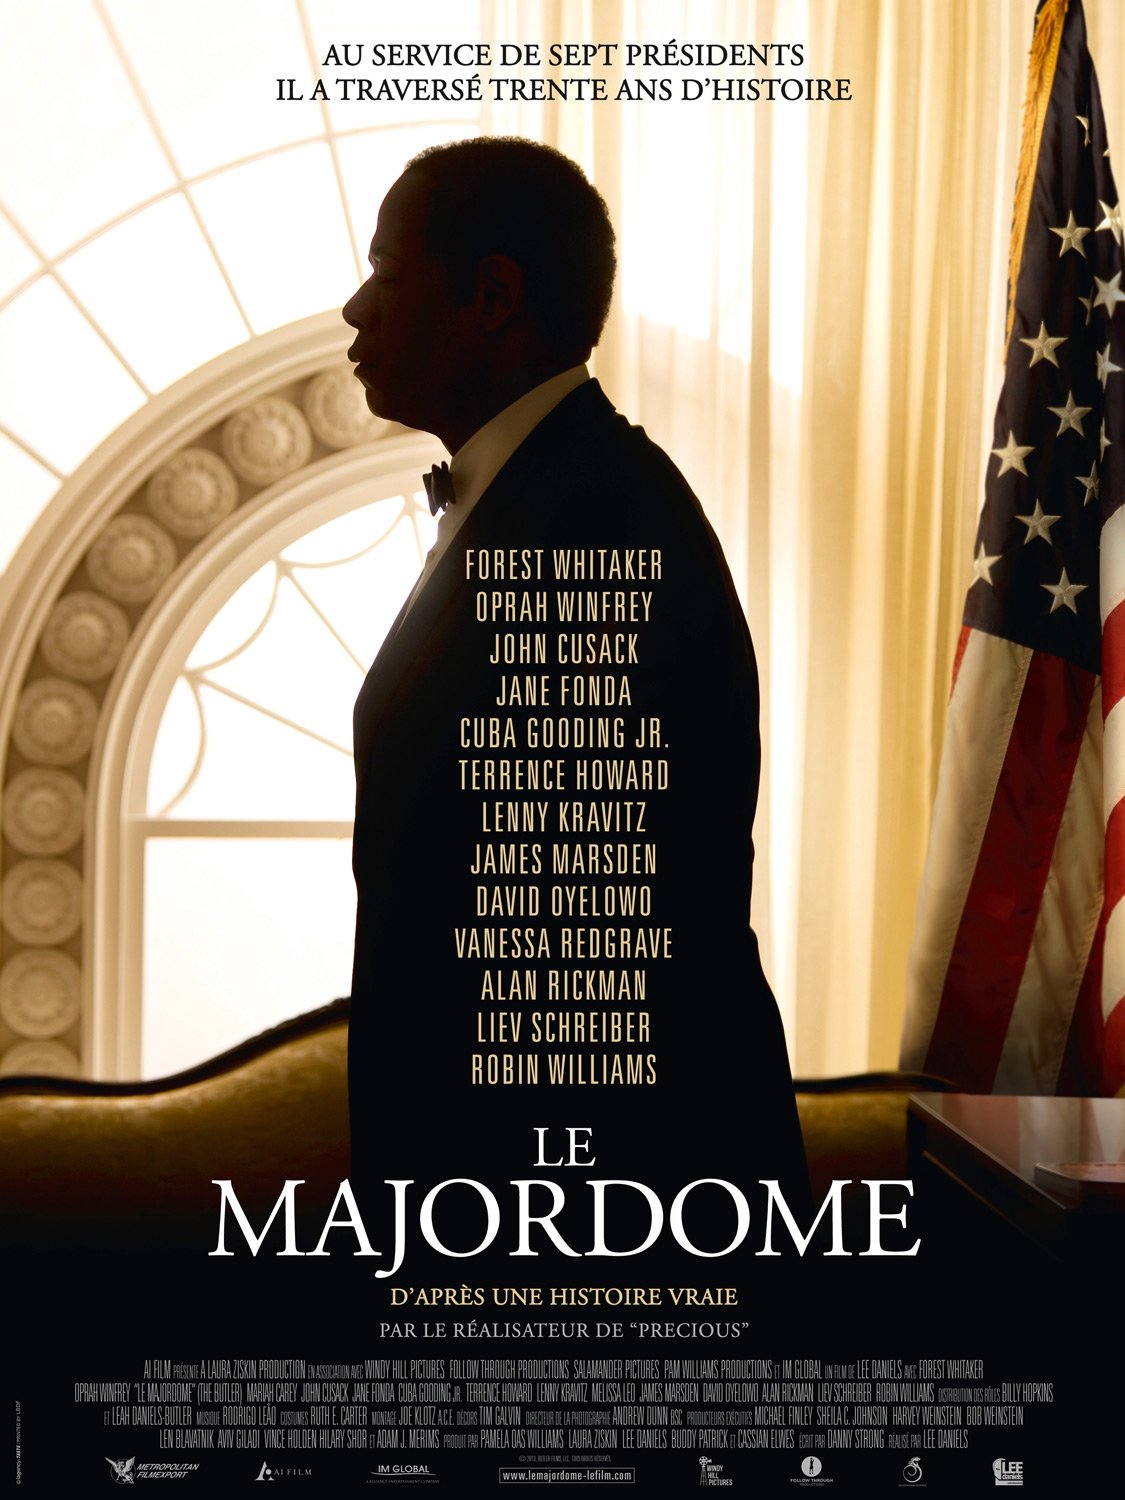 L'affiche du film Le Majordome